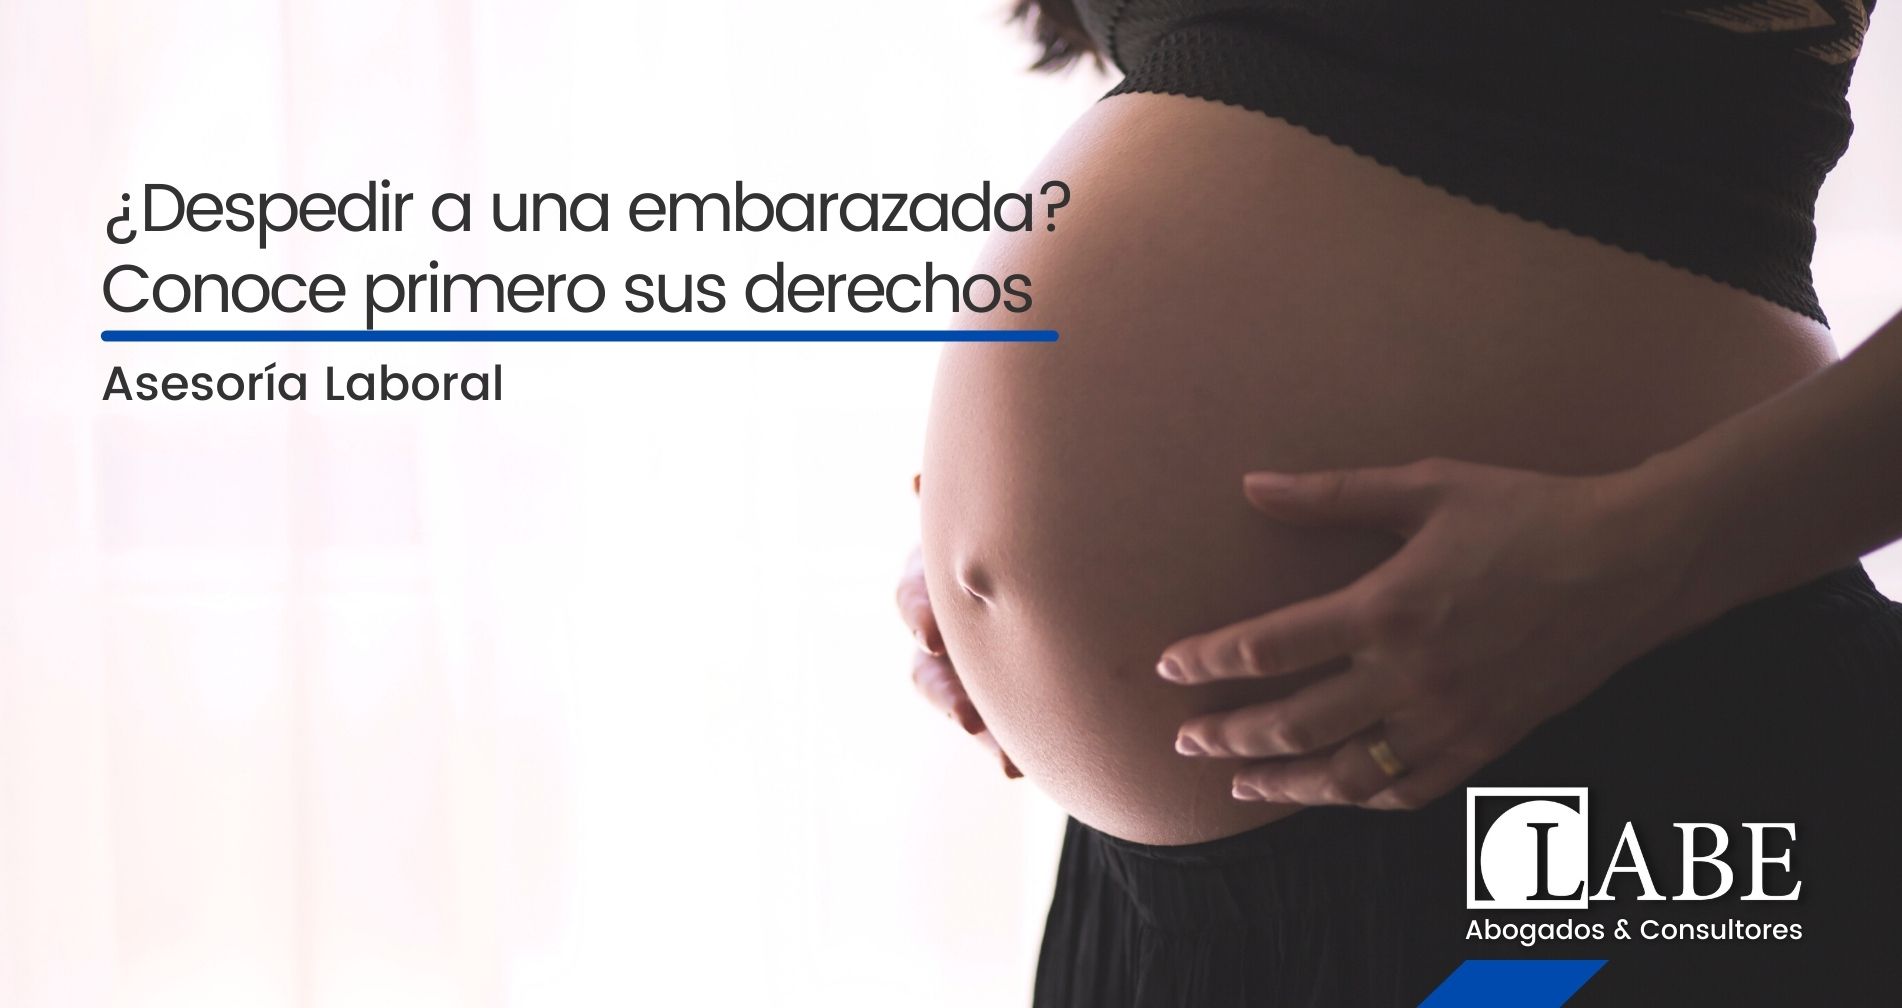 ¿Despedir a una embarazada? Conoce primero sus derechos